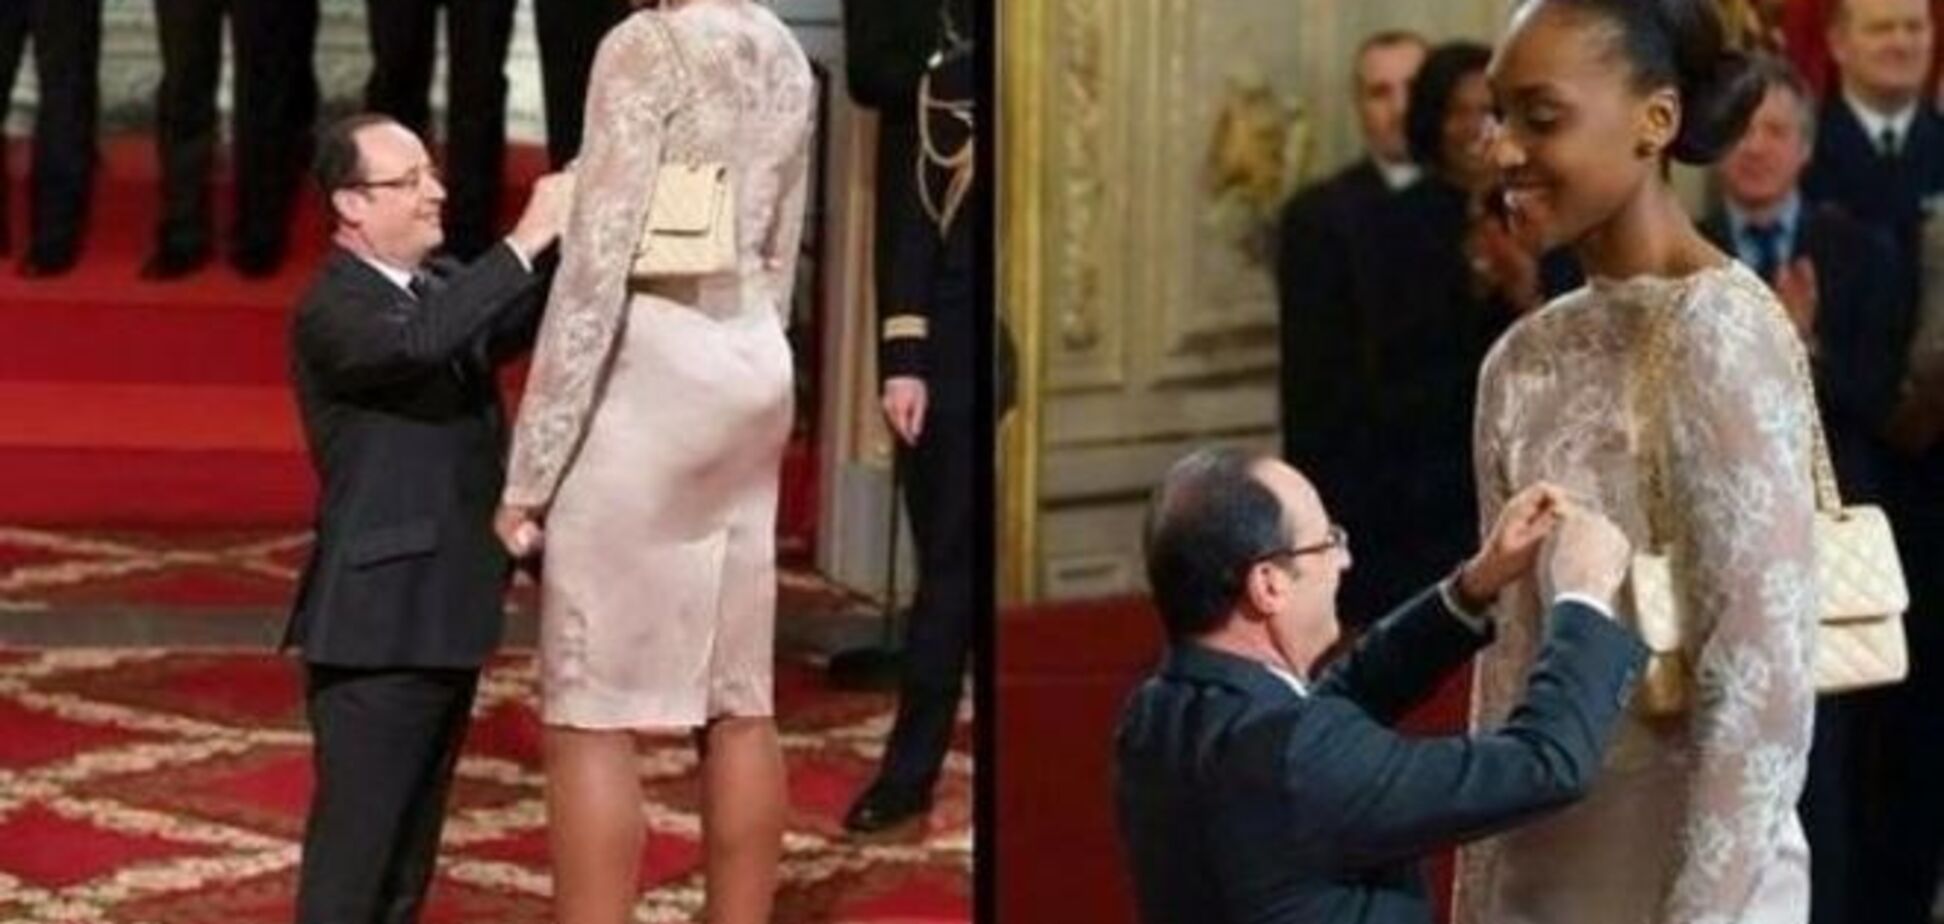 Інтернет підірвало фото президента Франції з баскетболісткою